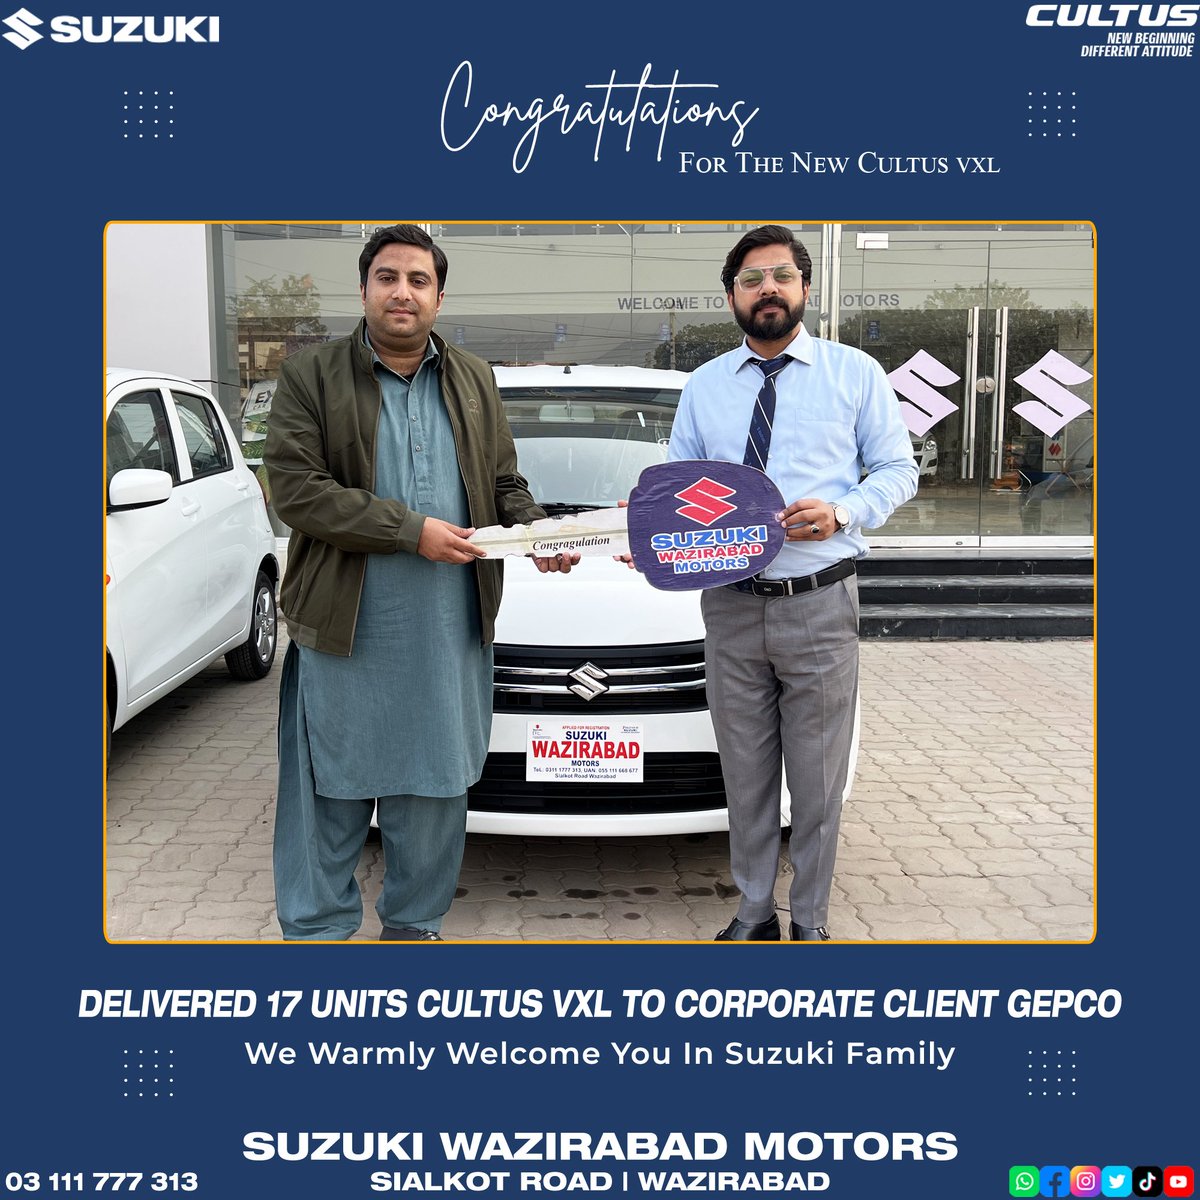 𝟏𝟕 𝐔𝐧𝐢𝐭𝐬 𝐂𝐮𝐥𝐭𝐮𝐬 𝐕𝐗𝐋 𝐃𝐞𝐥𝐢𝐯𝐞𝐫𝐞𝐝 𝐭𝐨 𝐂𝐨𝐫𝐩𝐨𝐫𝐚𝐭𝐞 𝐂𝐥𝐢𝐞𝐧𝐭 𝐆𝐮𝐣𝐫𝐚𝐧𝐰𝐚𝐥𝐚 𝐄𝐥𝐞𝐜𝐭𝐫𝐢𝐜 𝐏𝐨𝐰𝐞𝐫 𝐂𝐨𝐦𝐩𝐚𝐧𝐲. (𝐆𝐄𝐏𝐂𝐎)

𝐒𝐮𝐳𝐮𝐤𝐢 𝐖𝐚𝐳𝐢𝐫𝐚𝐛𝐚𝐝 𝐌𝐨𝐭𝐨𝐫𝐬
#CorporateClient #Suzuki #SuzukiPakistan